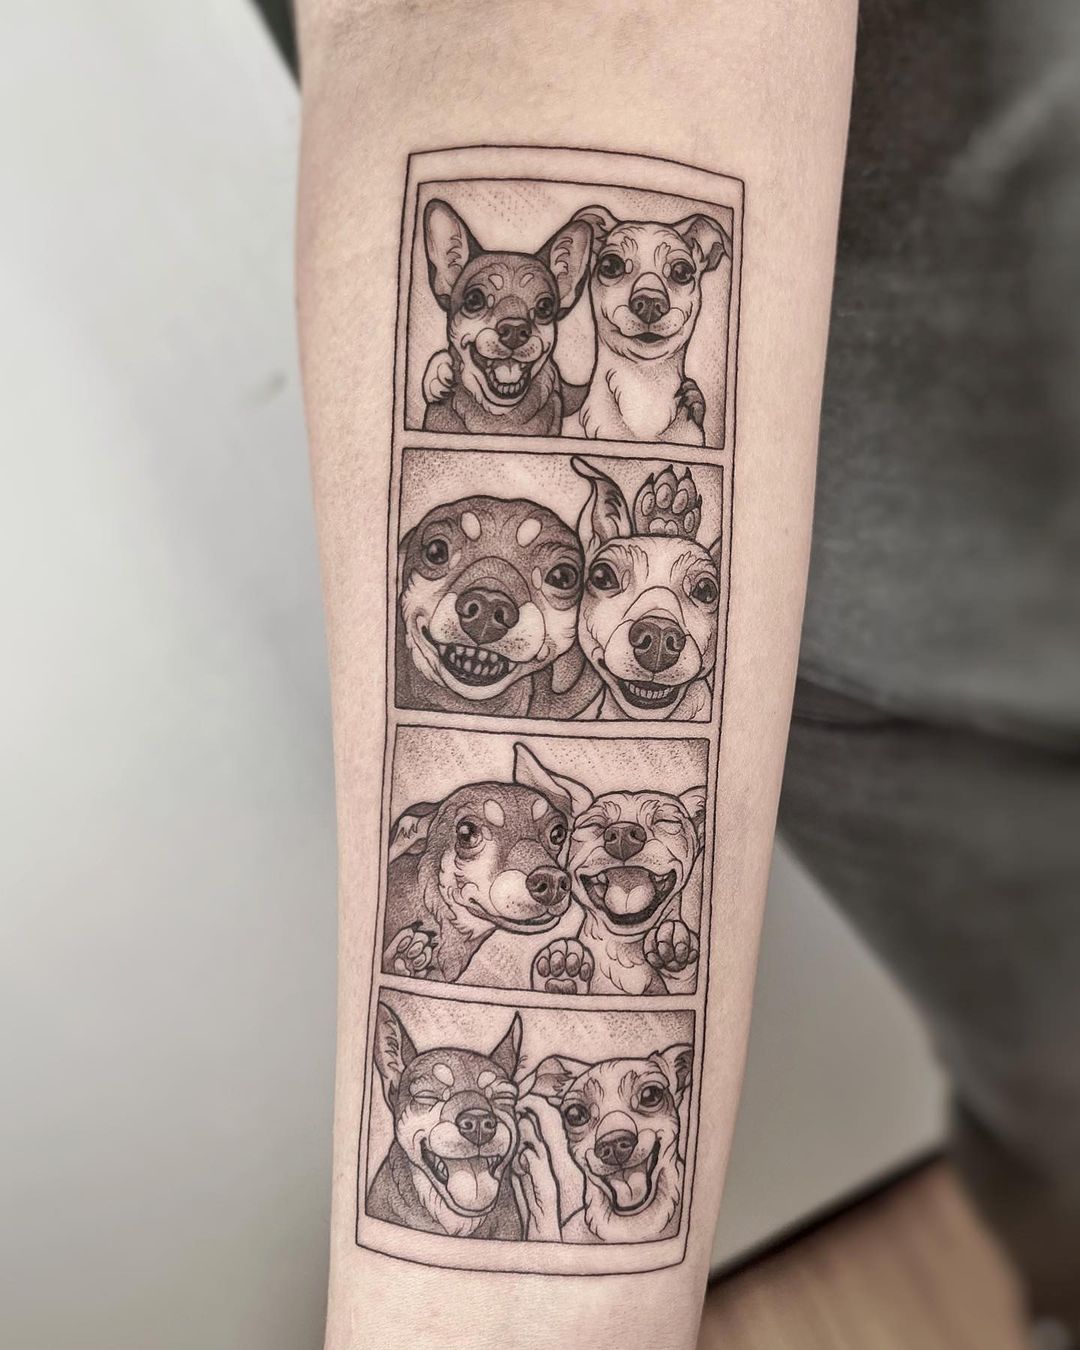 Best Friend Tattoo